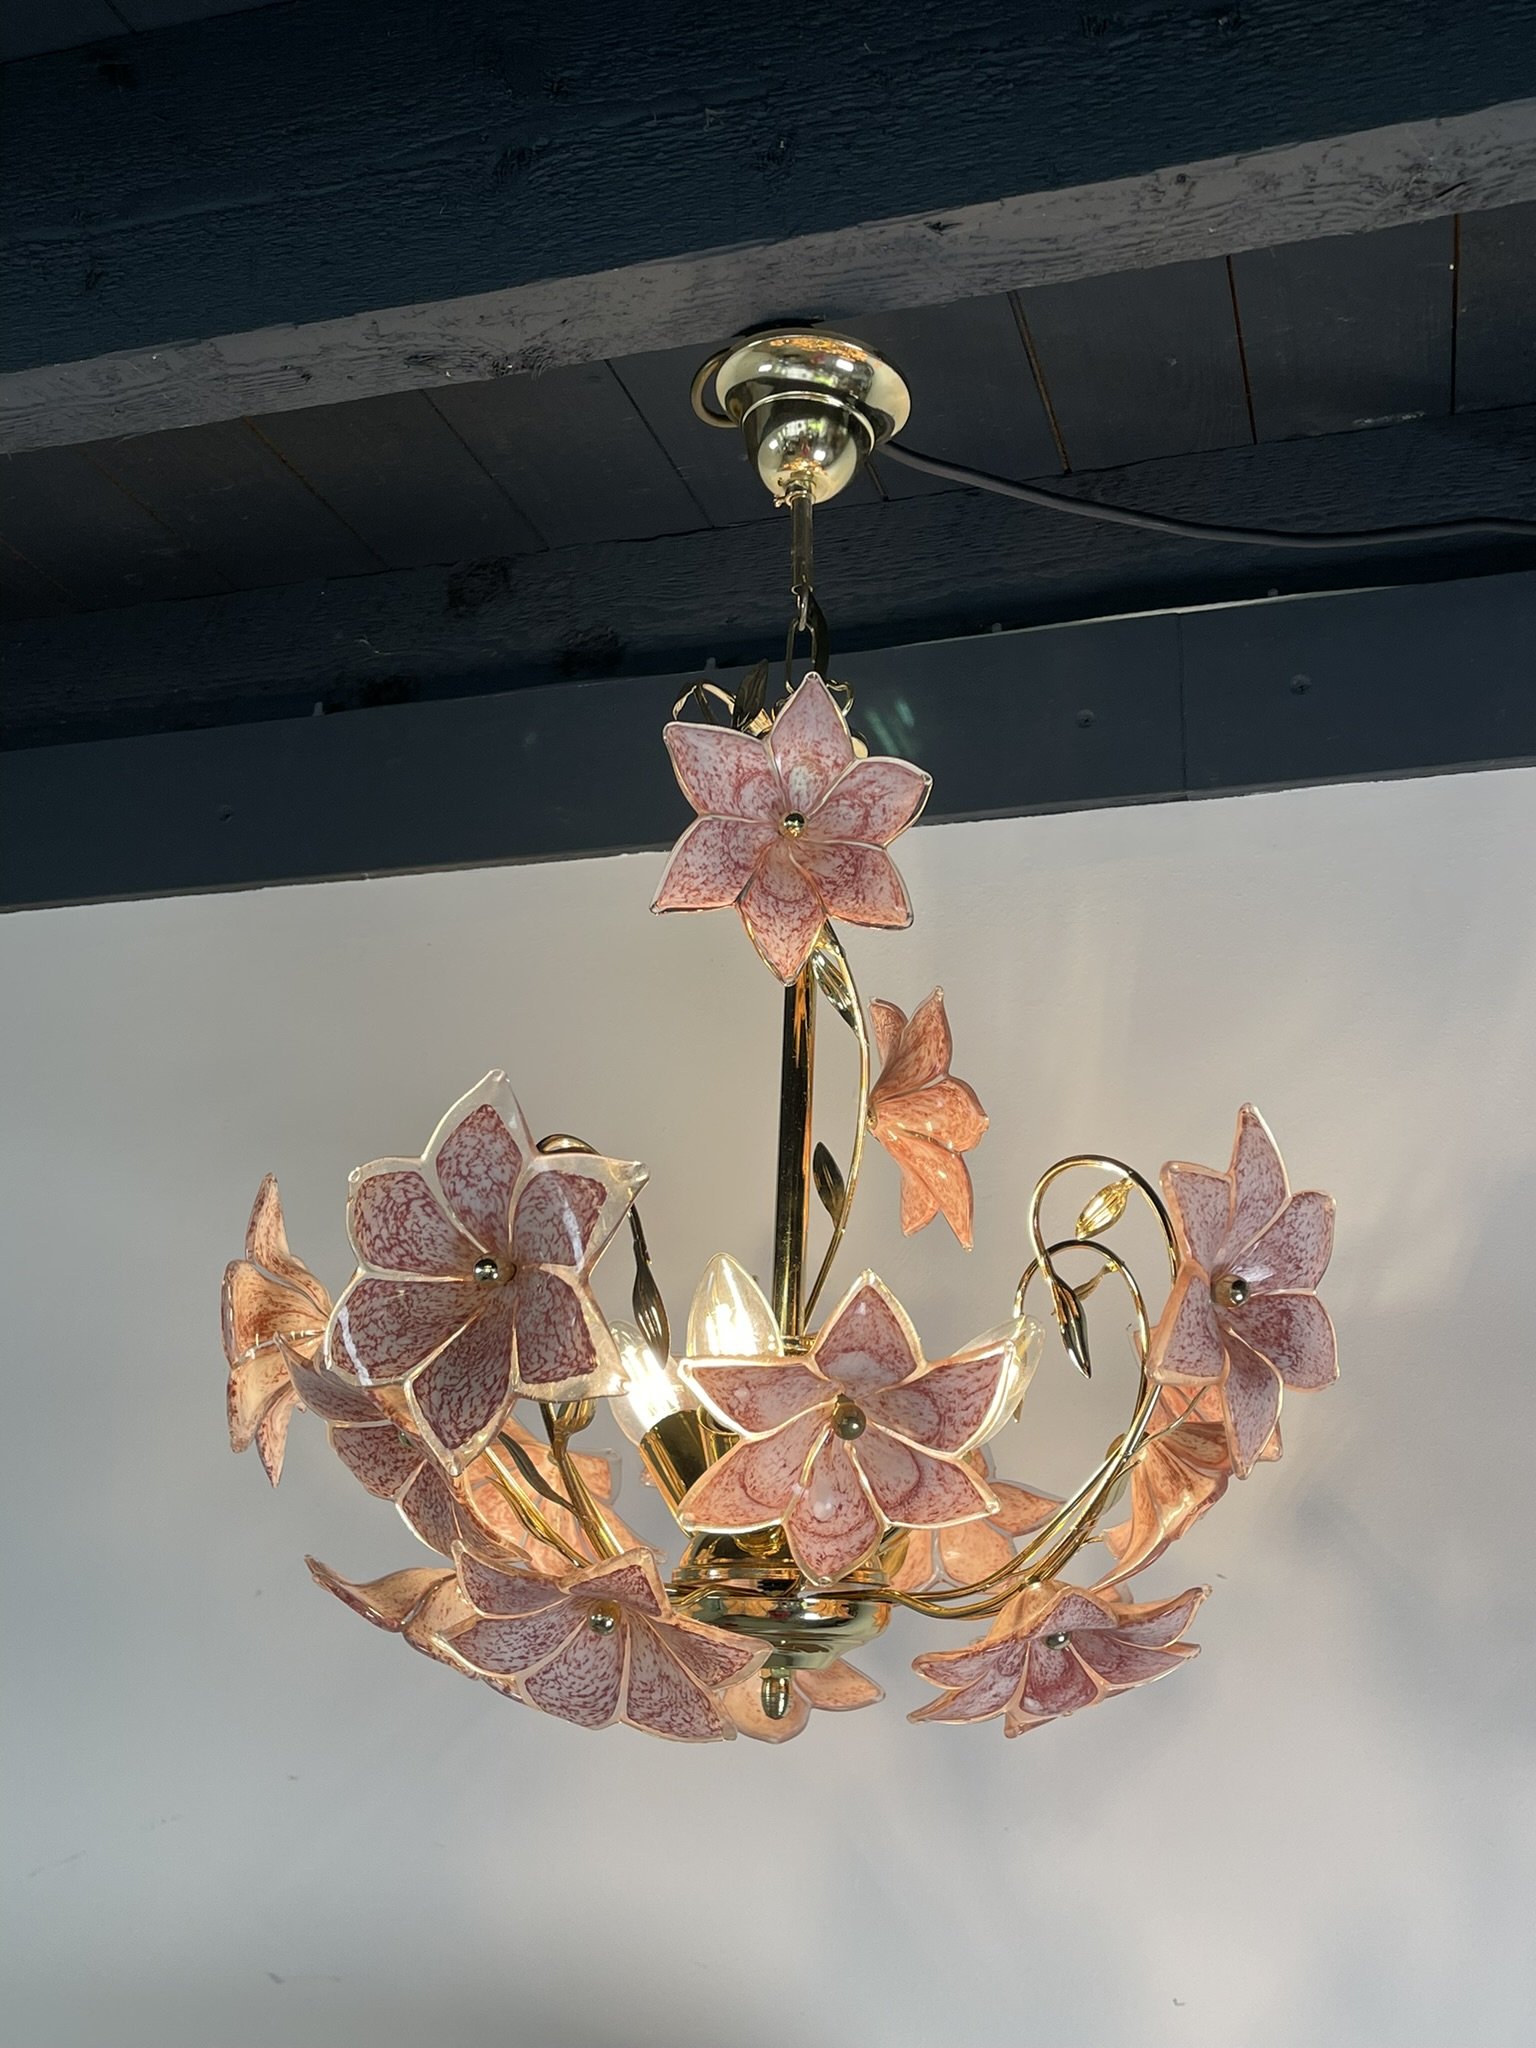 Whoppah Goud met roze bloemenlamp Murano Glass/Messing - Tweedehands